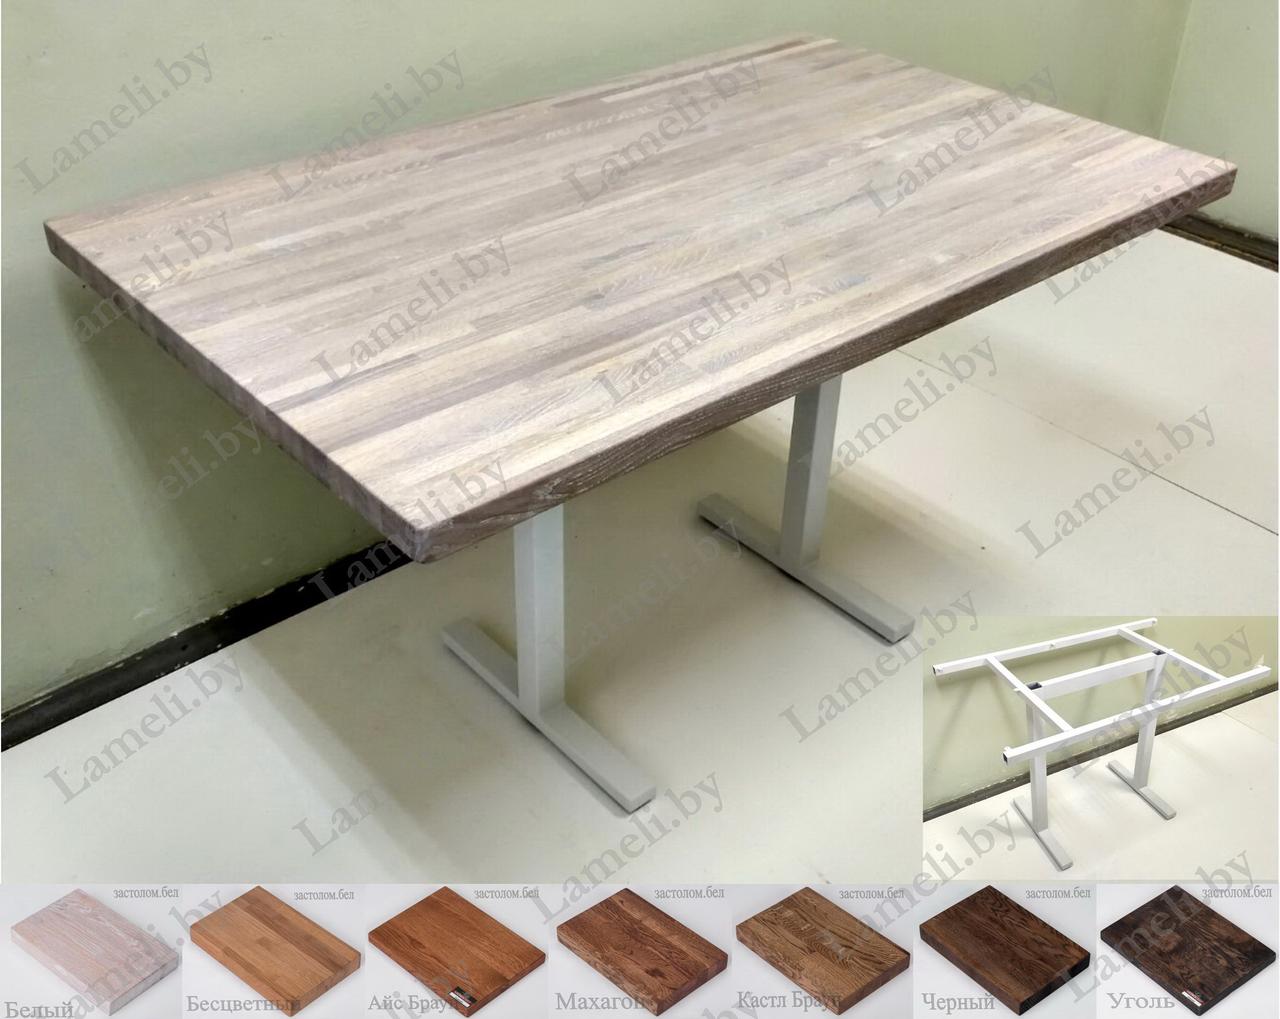 Удобный кухонный стол на металлокаркасе серии "Н" из постформинга, массива дуба или ЛДСП с выбором раз